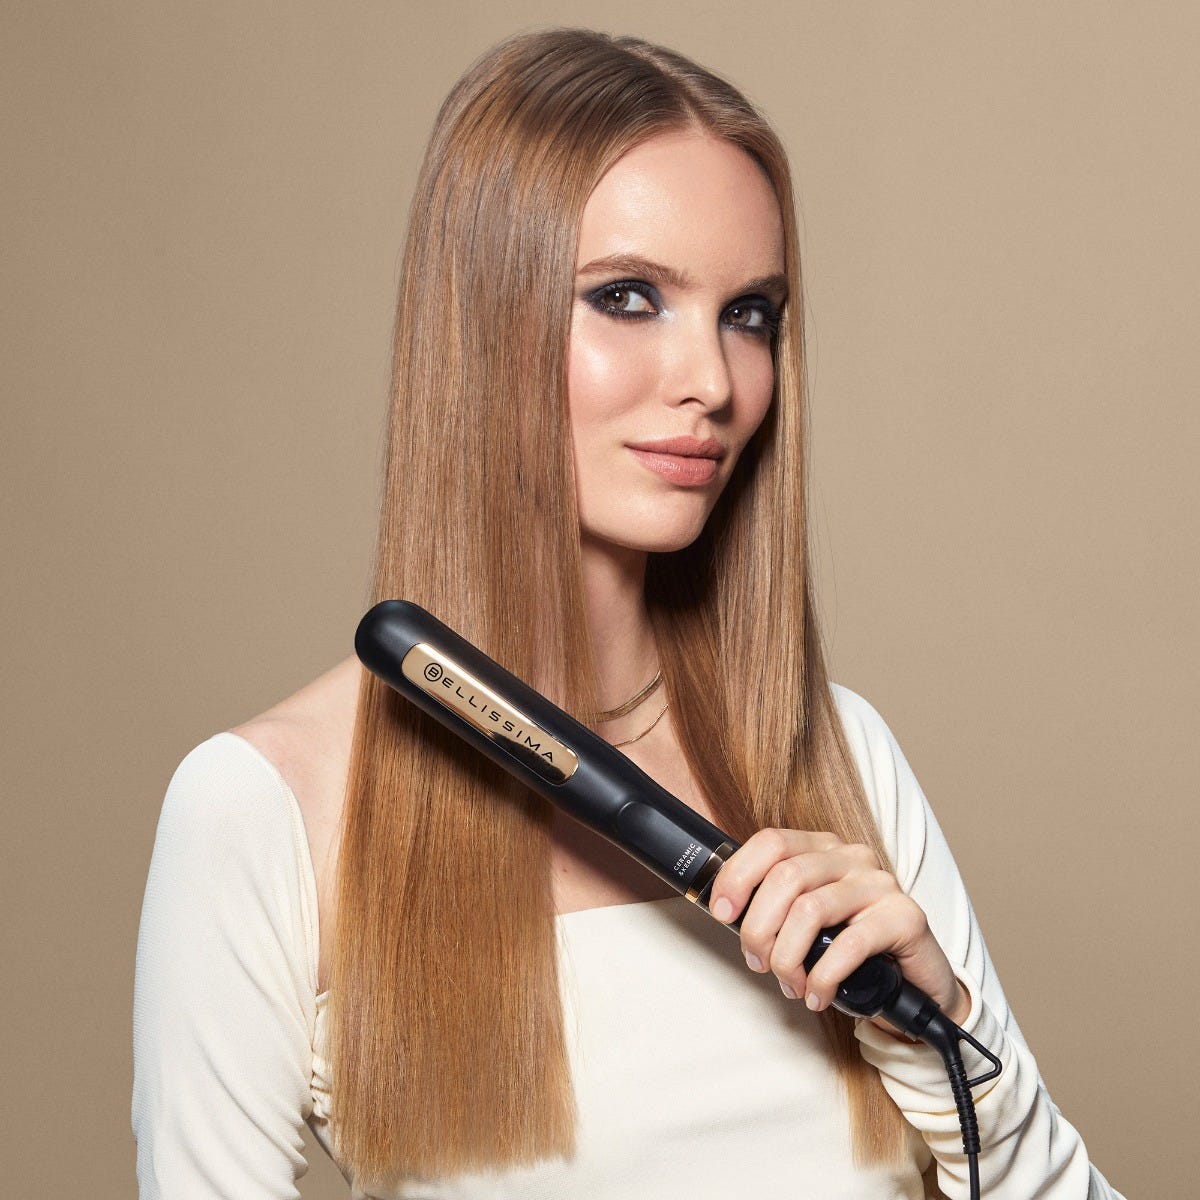 Piastra a vapore per capelli: usi e benefici